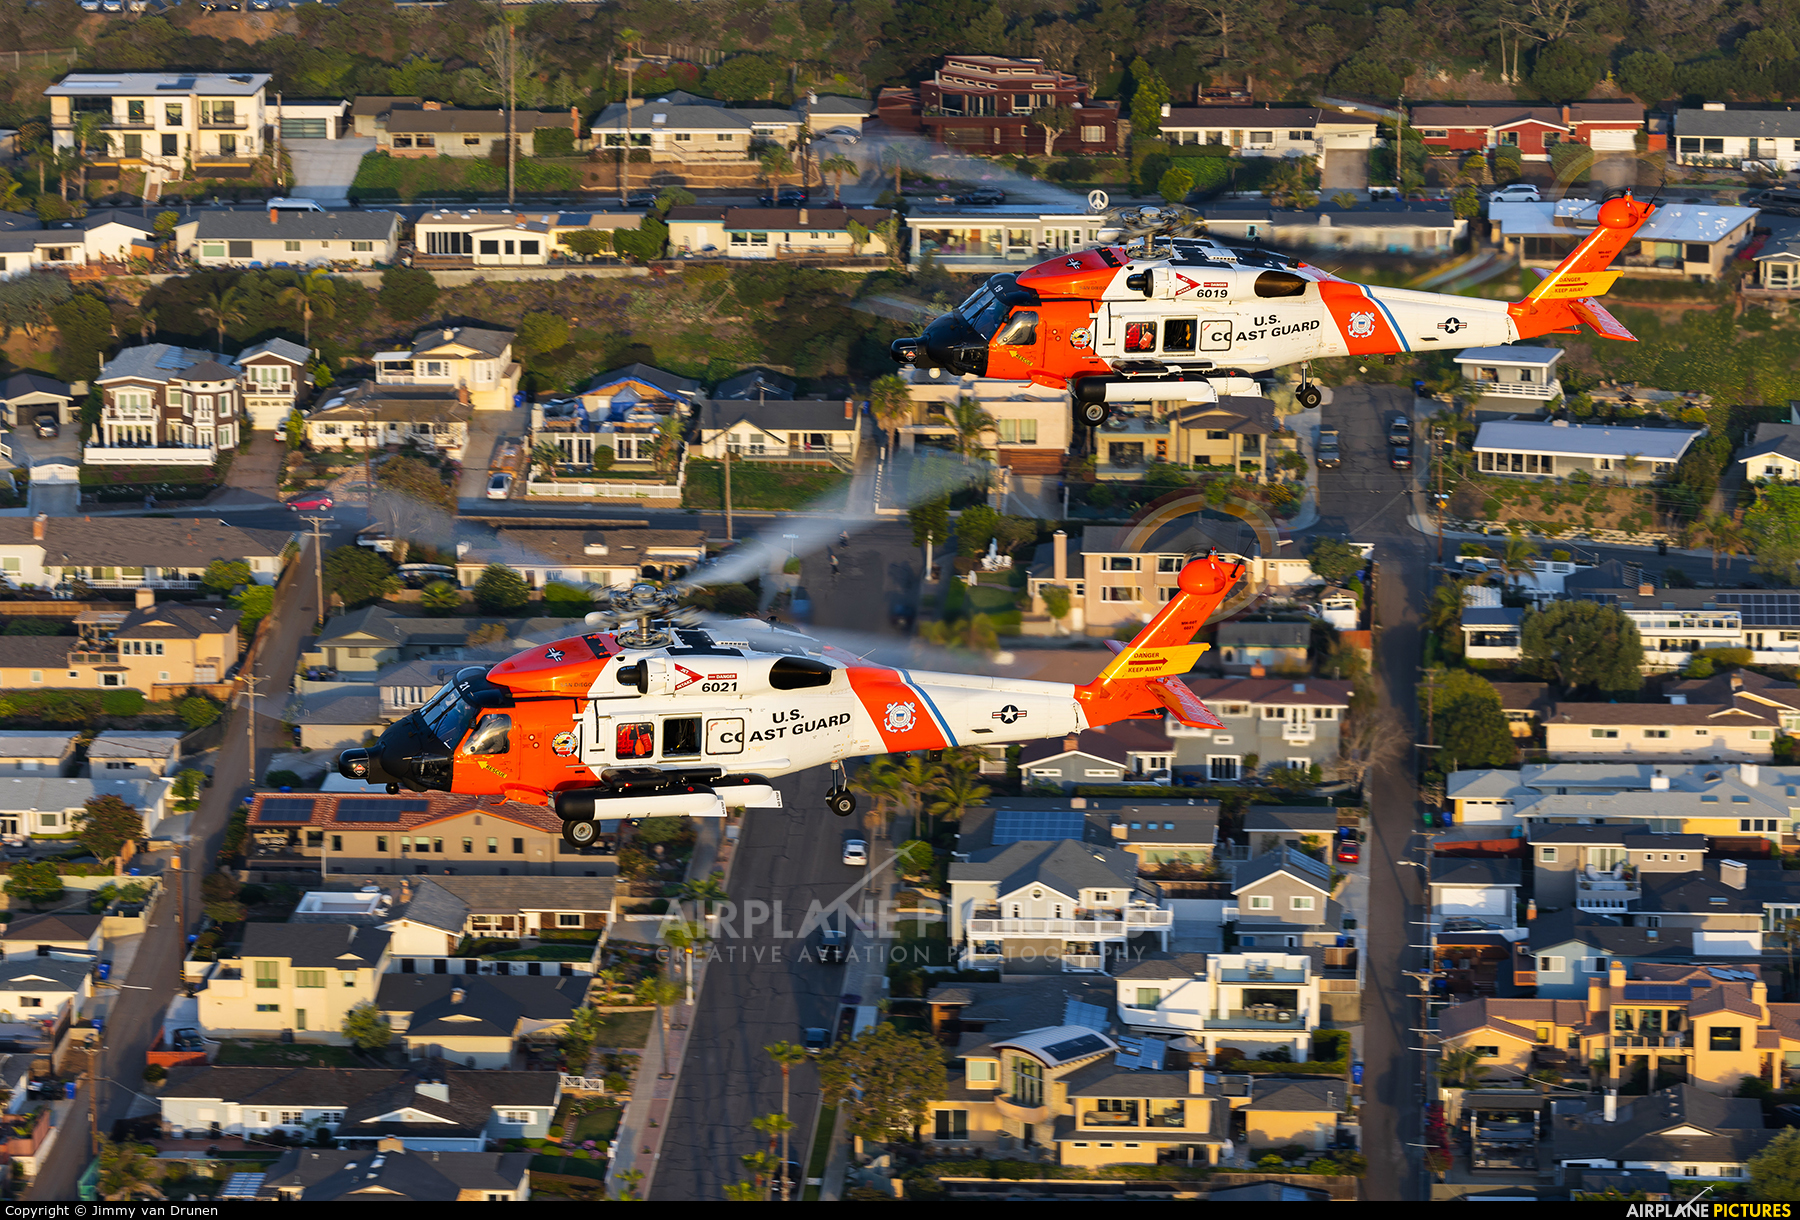 USA - Coast Guard 6021 aircraft at In Flight - California